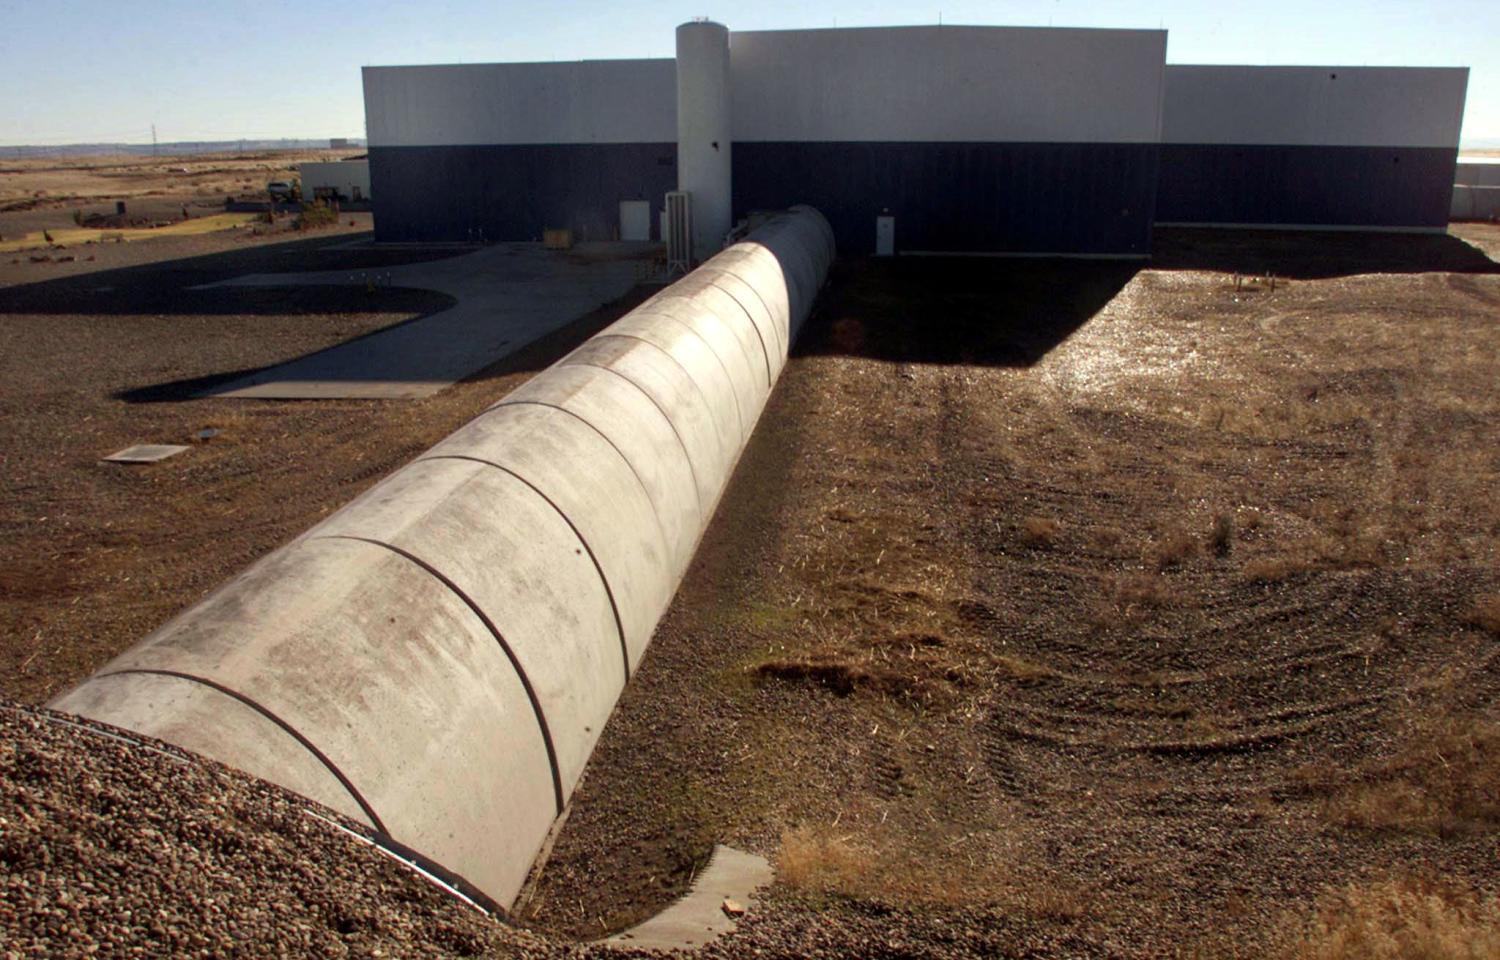 A LIGO Hanford Obszervatórium lézer műszereit egy hatalmas beton-acél alagútban helyezték el. Az alagút egy 4X4 kilométeres, L-alakú vákum laboratóriumot rejt, melynek sarkain hatalmas tükröket helyeztek el